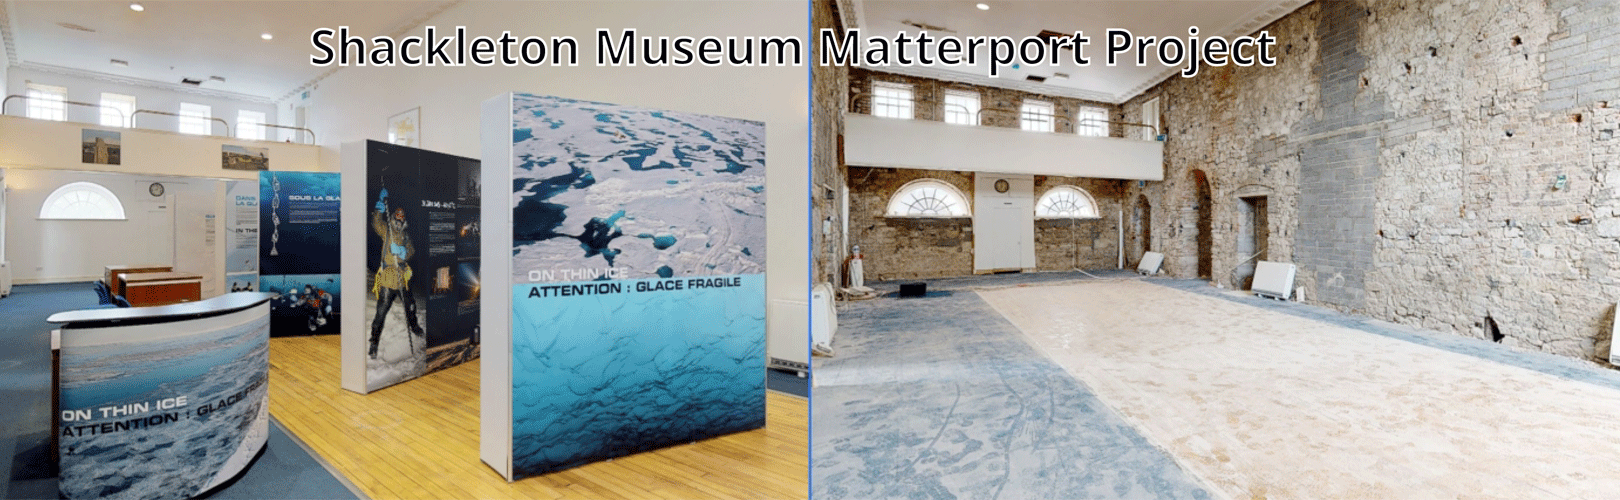 shackleton-museum-matterport-3d-virtual-tour-stages-comparison-V1-2-1620x500